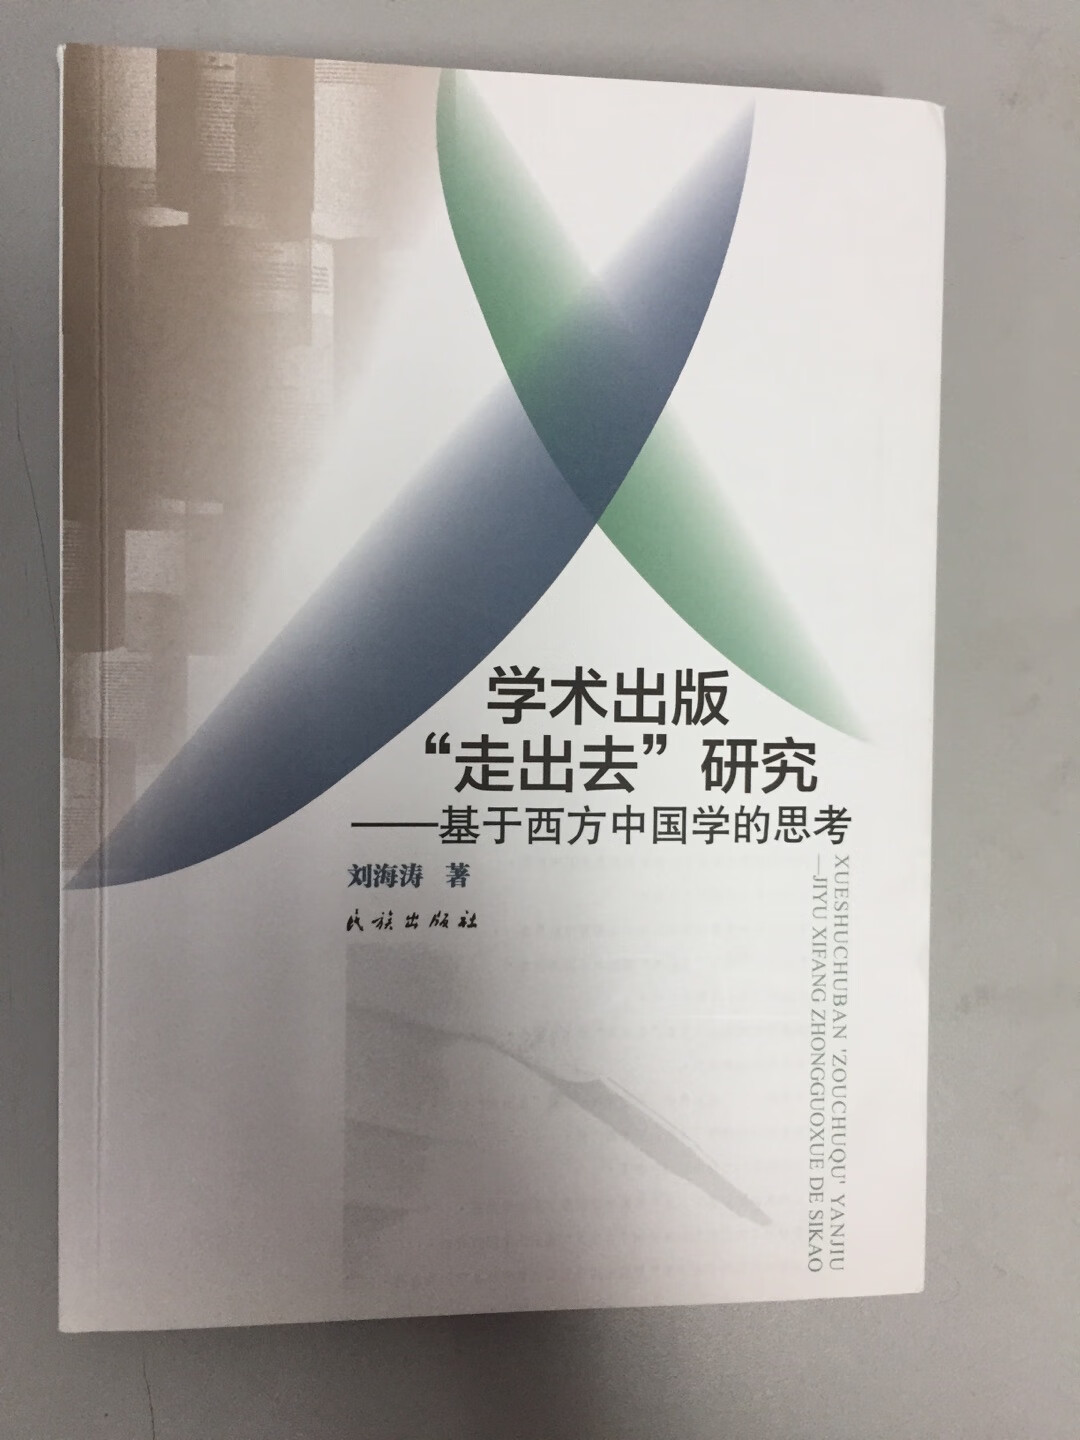 刘海涛老师的研究很踏实。人大社、交大社、社科文献社的成就，总结很好。虽然民族出版社是小出版社，他的视野比较大。